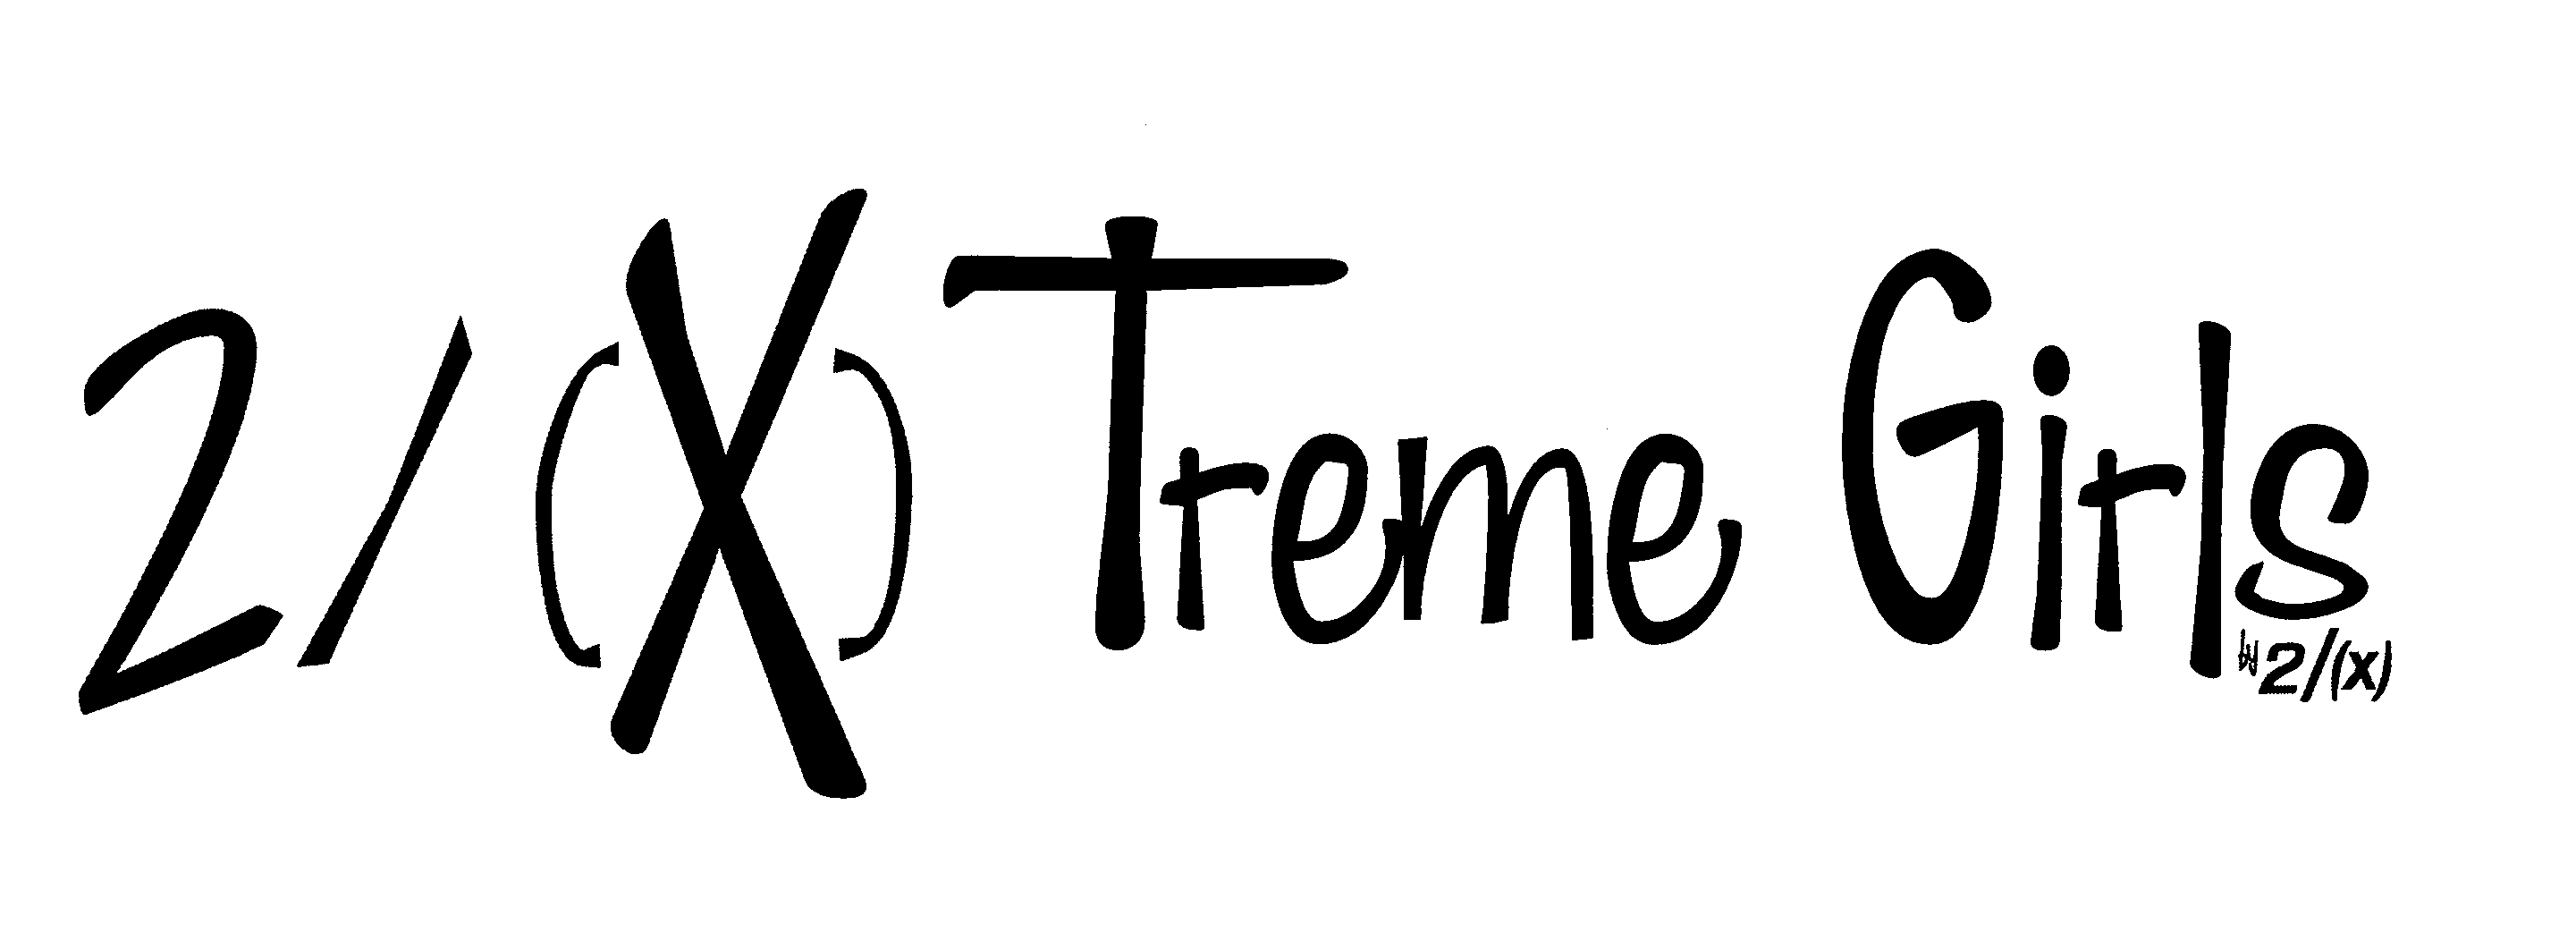 Trademark Logo 2/(X)TREME GIRLS BY 2/(X) STYLIZED